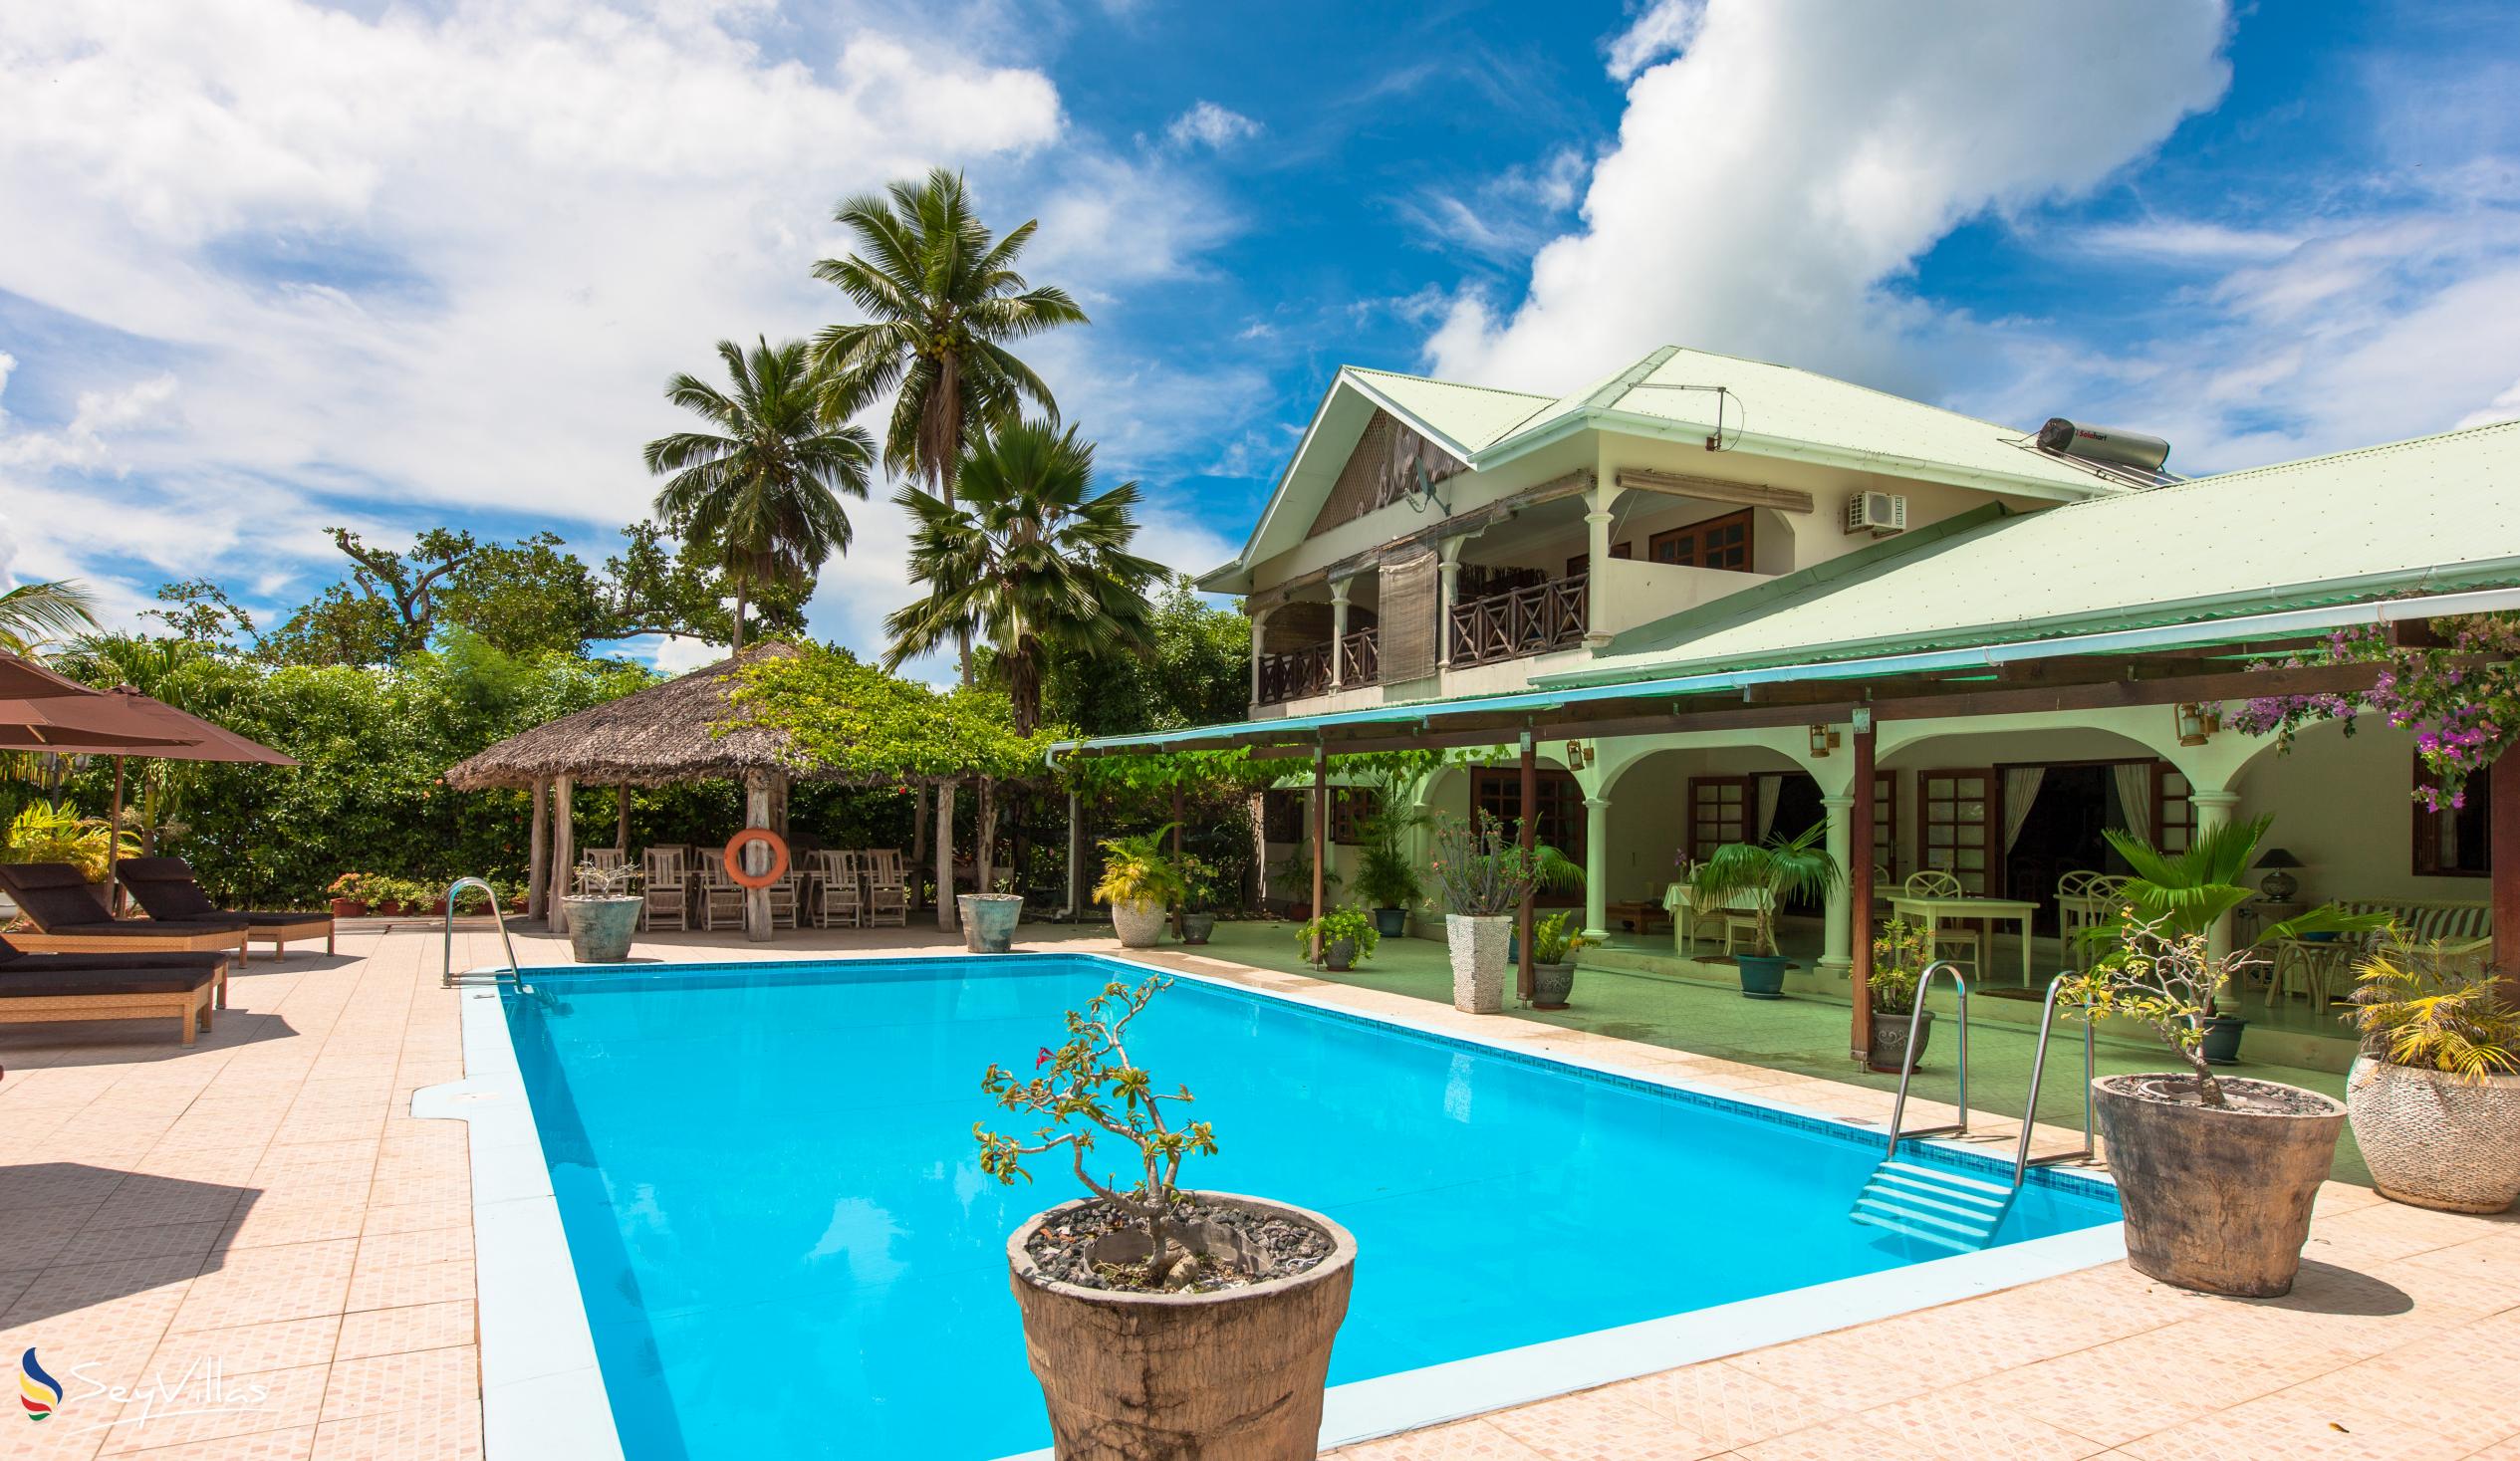 Foto 4: Villa de Cerf - Extérieur - Cerf Island (Seychelles)